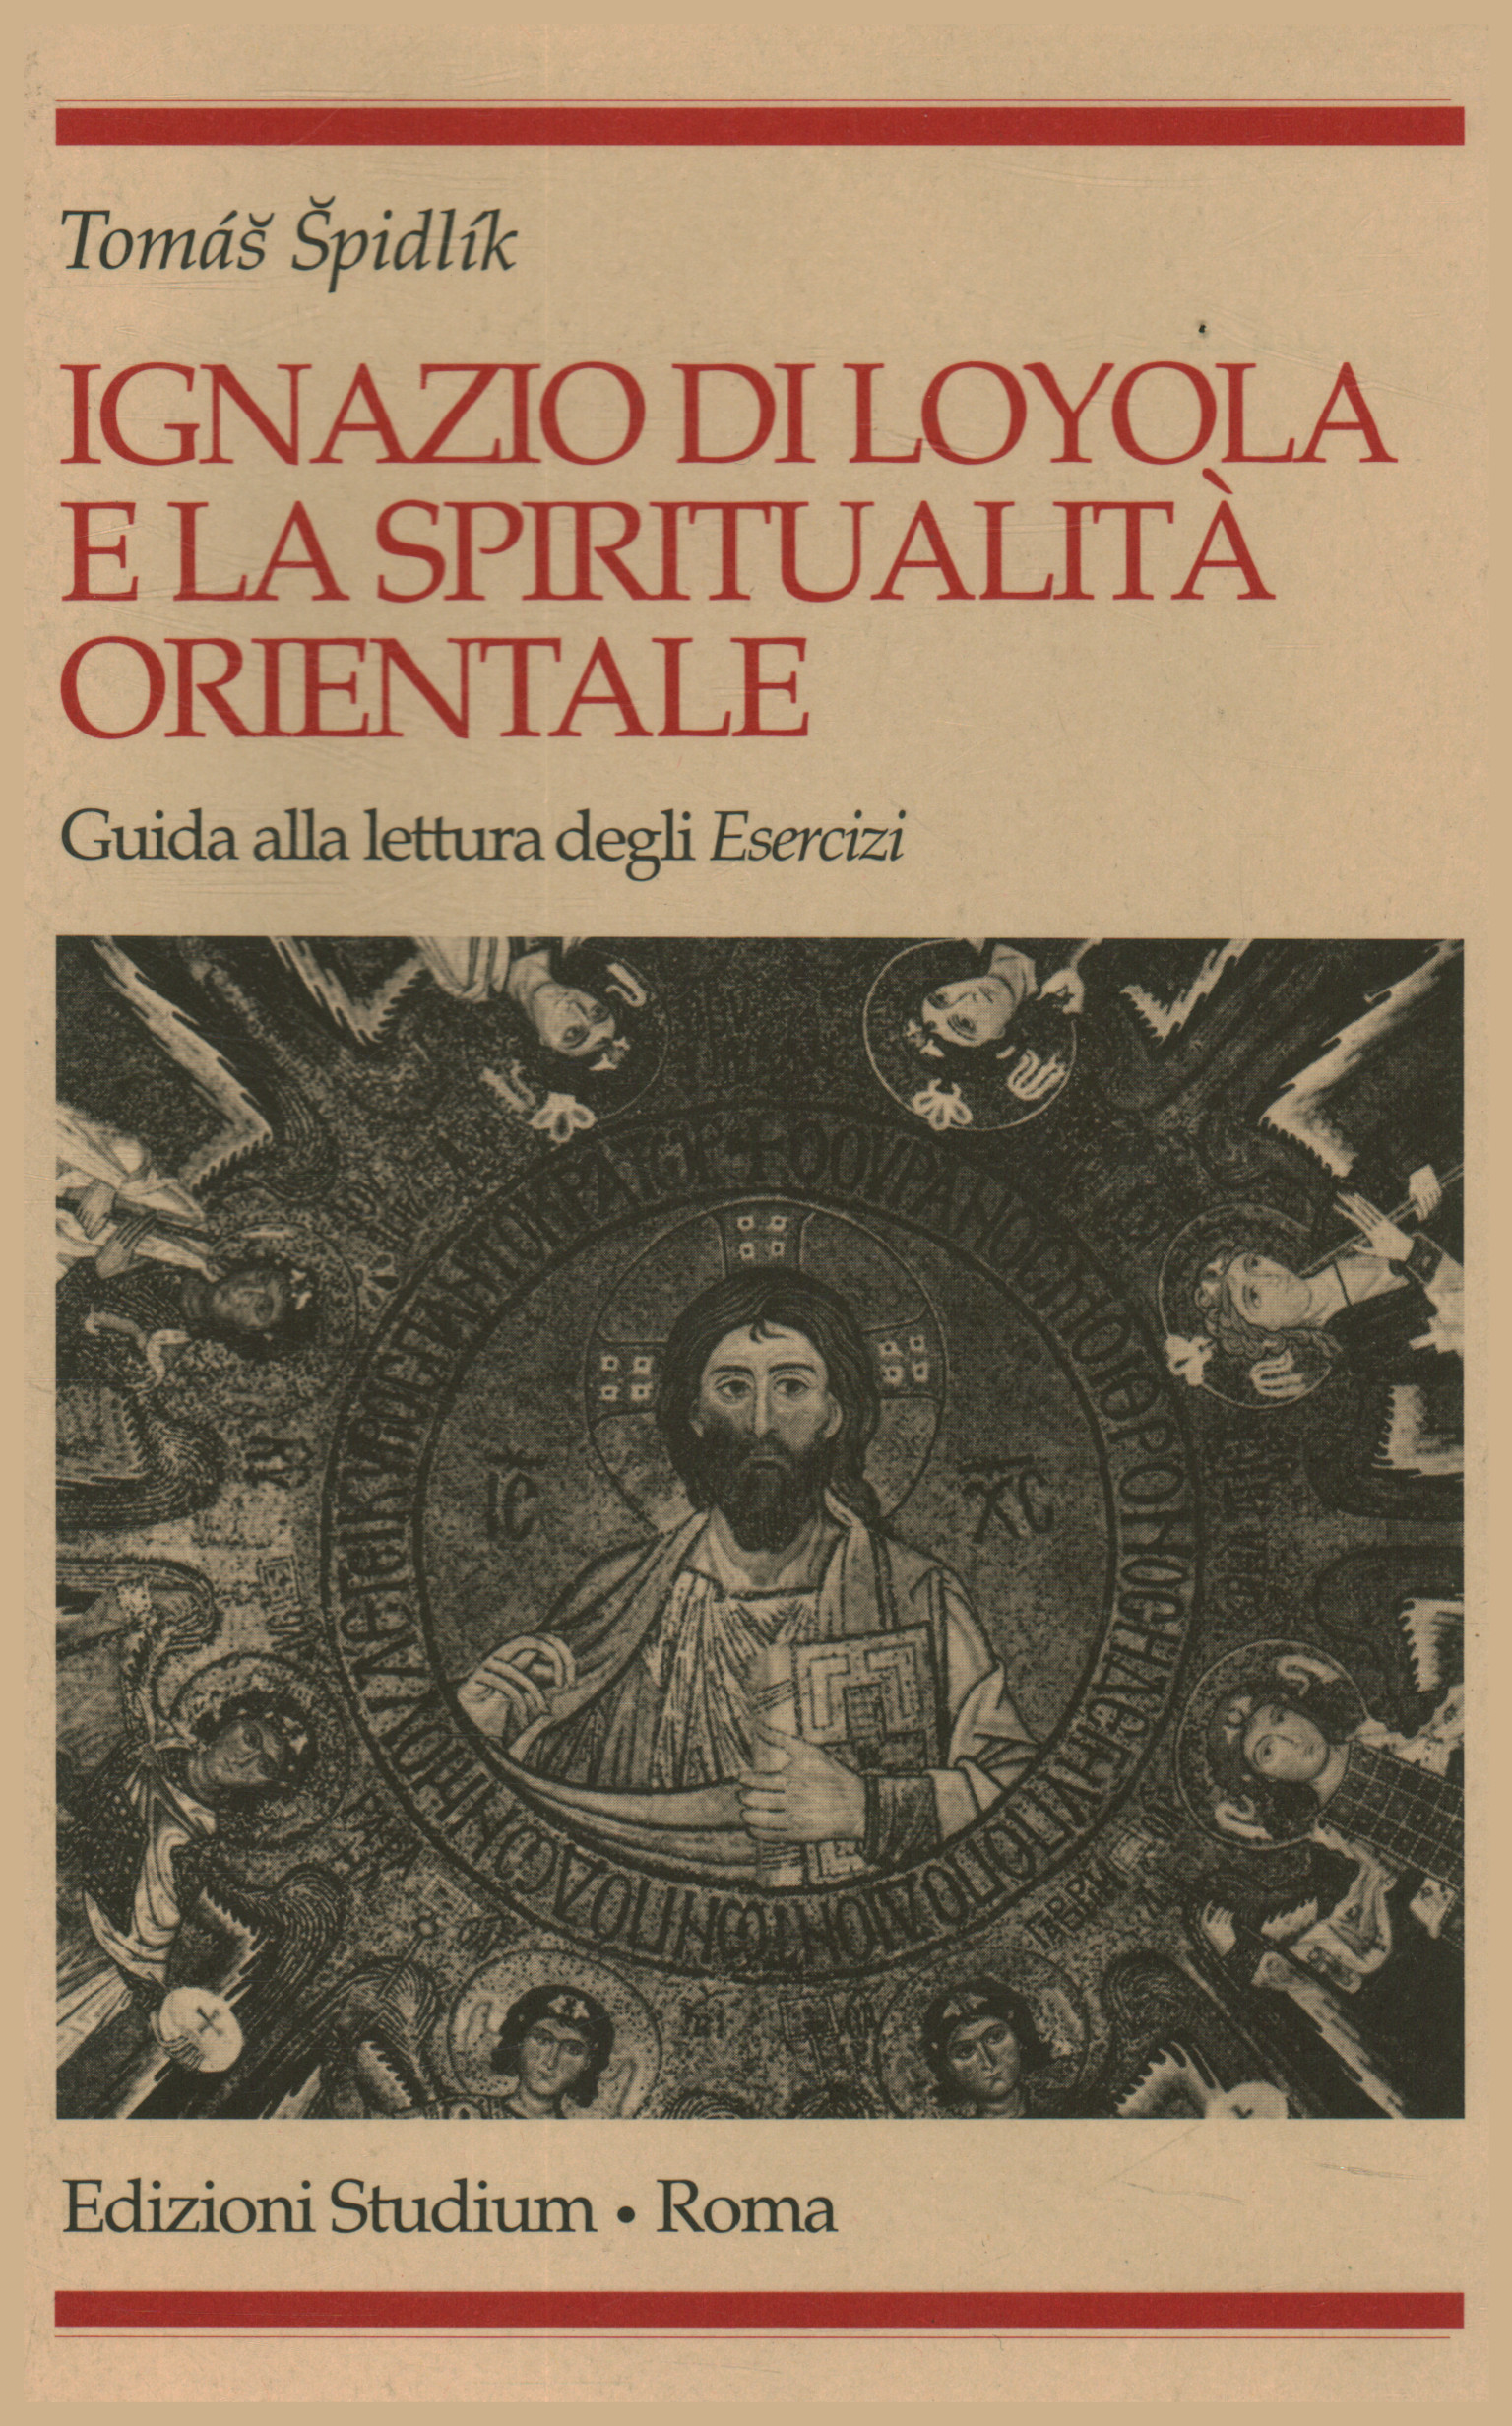 Ignatius von Loyola und Spiritualität